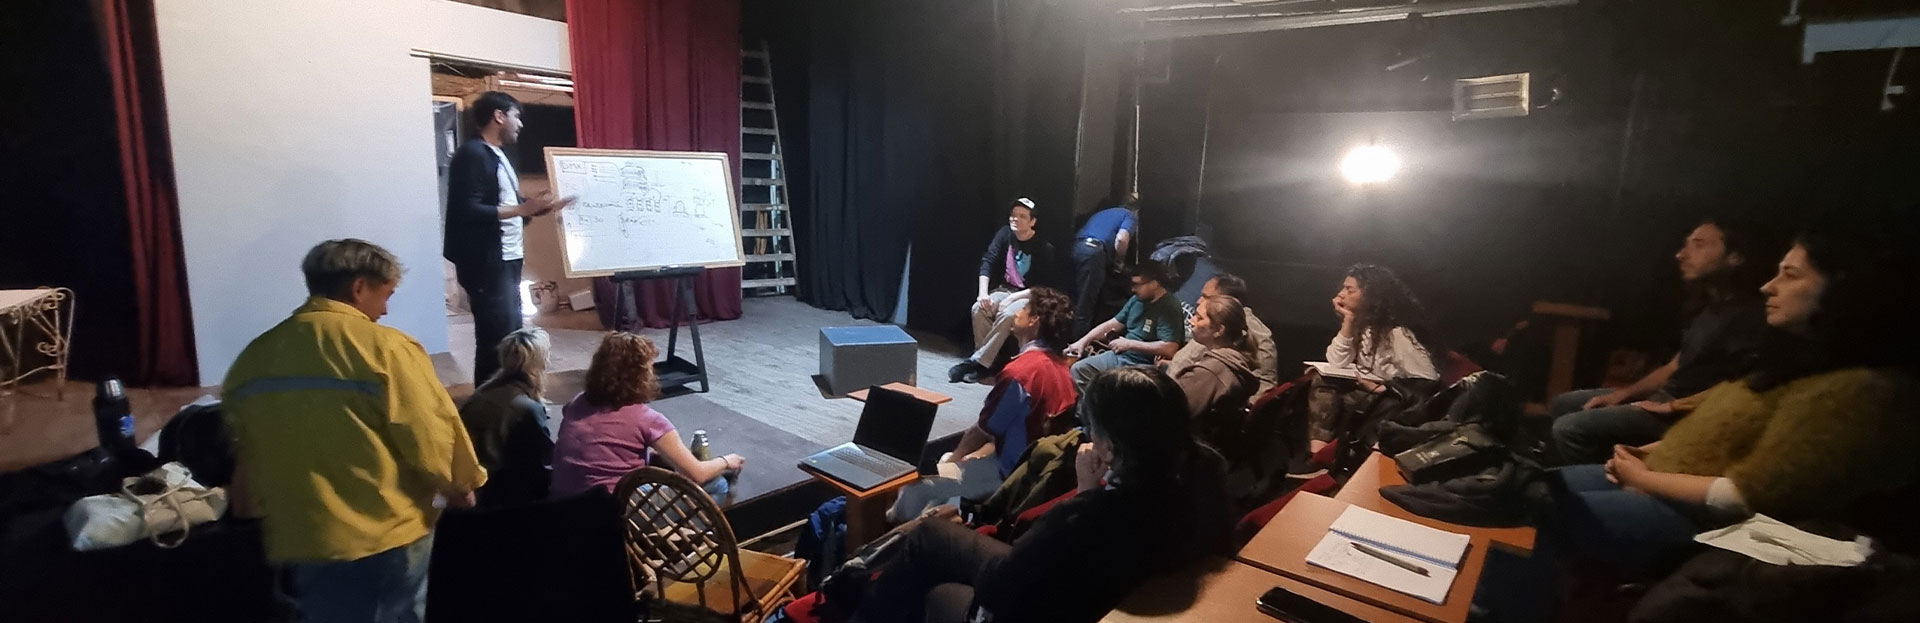 Estudiantes del COPAC cursan materias en el teatro Luisa Vehil